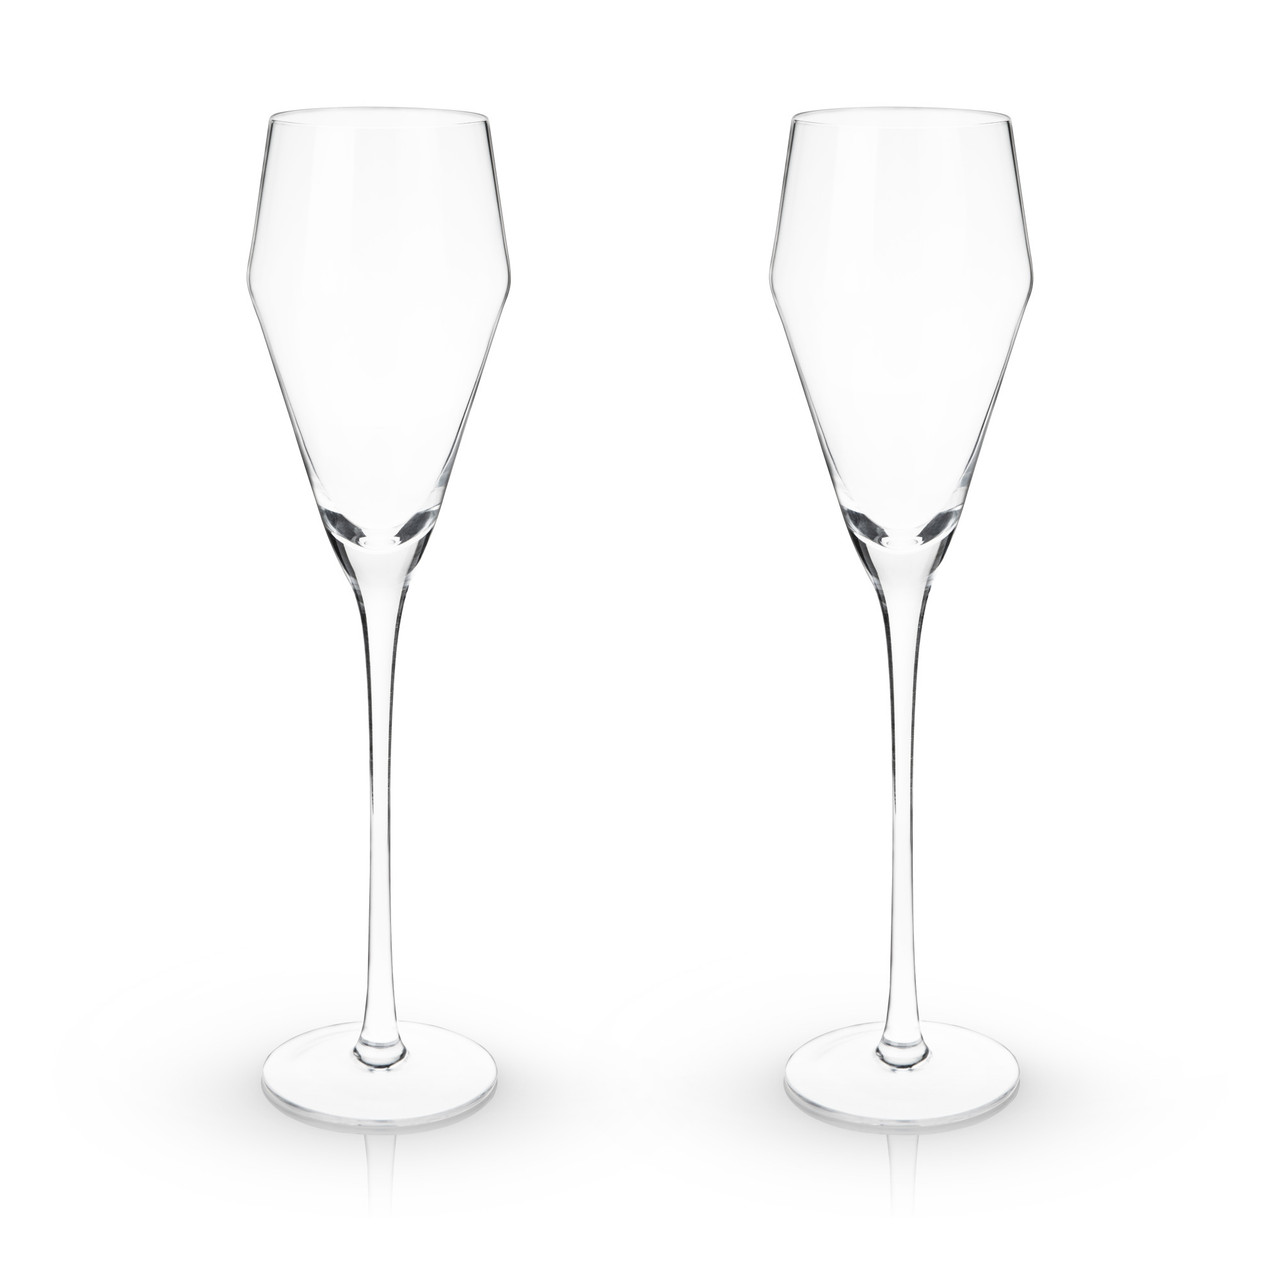 Angled Crystal Prosecco Glasses by Viski®